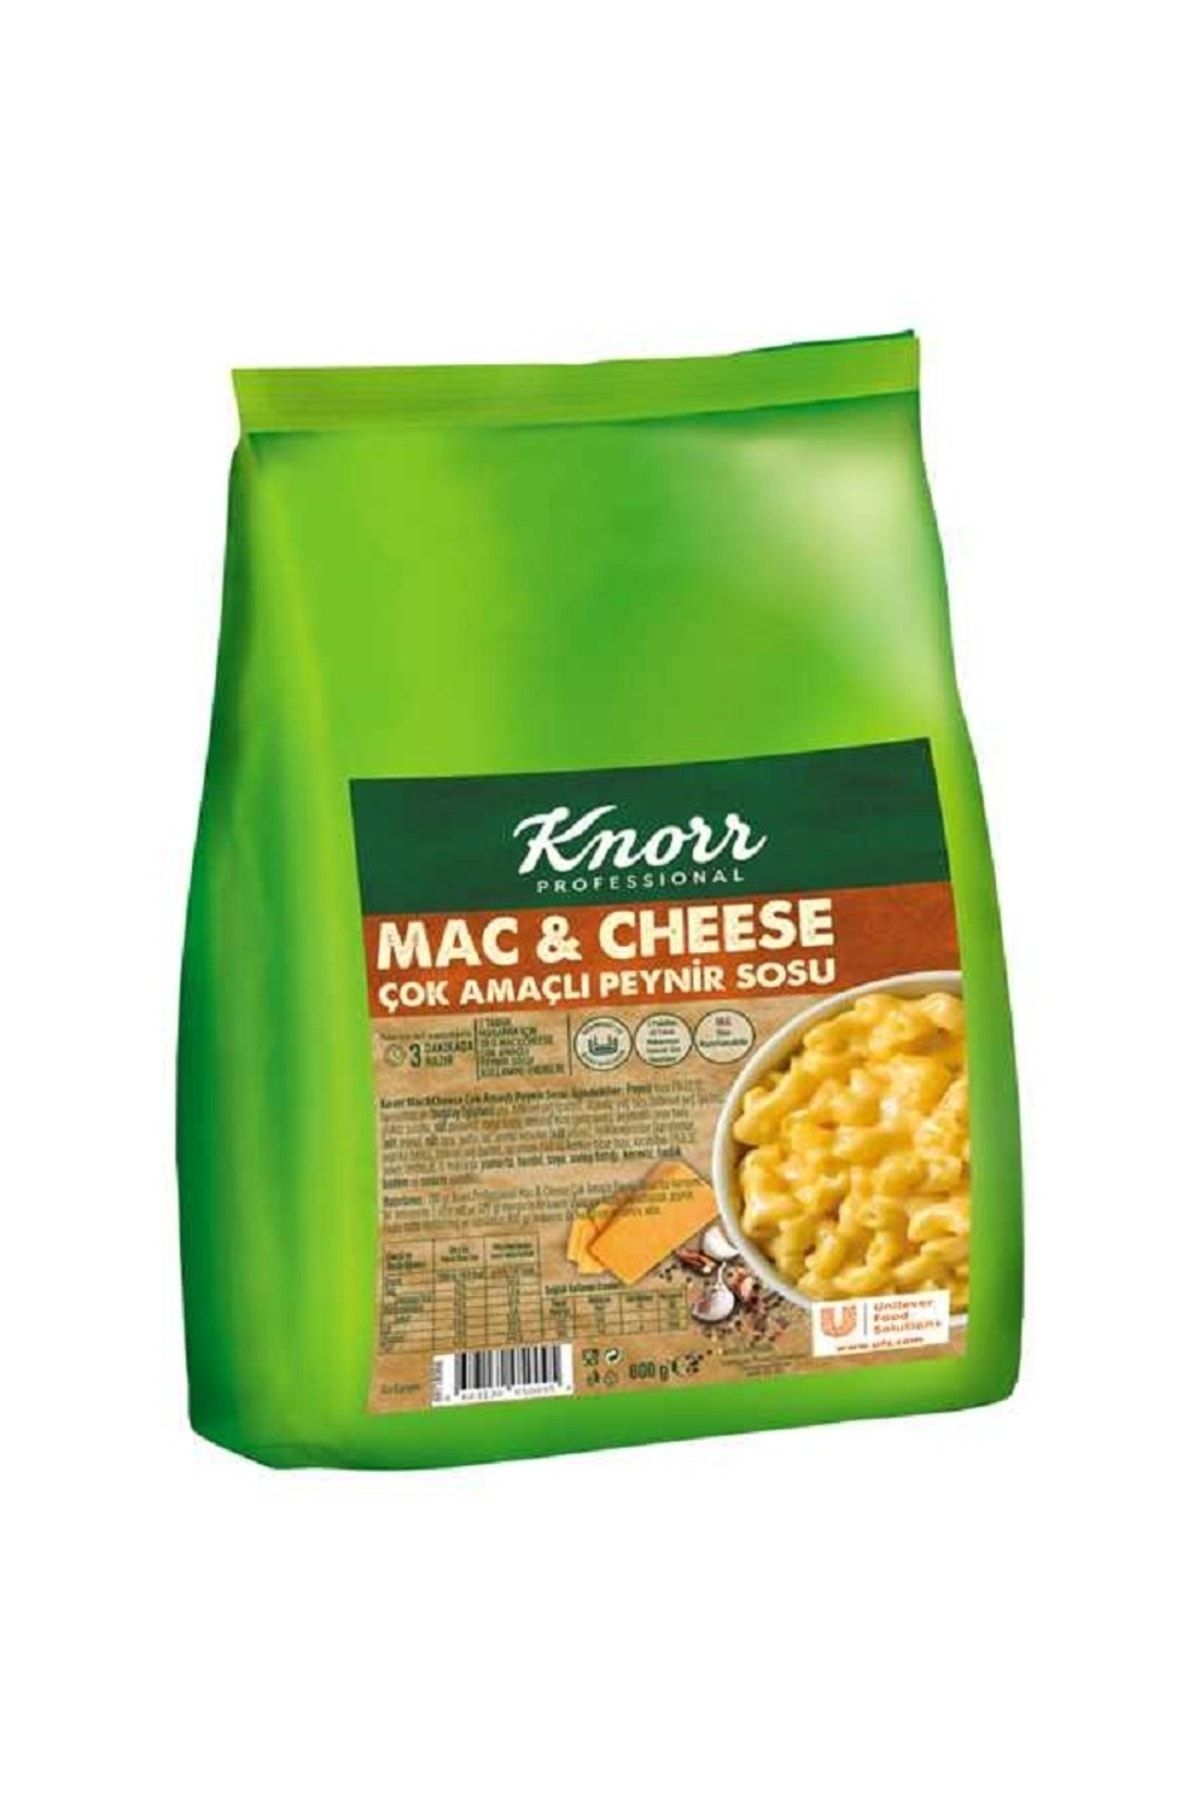 Knorr Mac & Cheese Çok Amaçlı Peynir Sosu 800GR